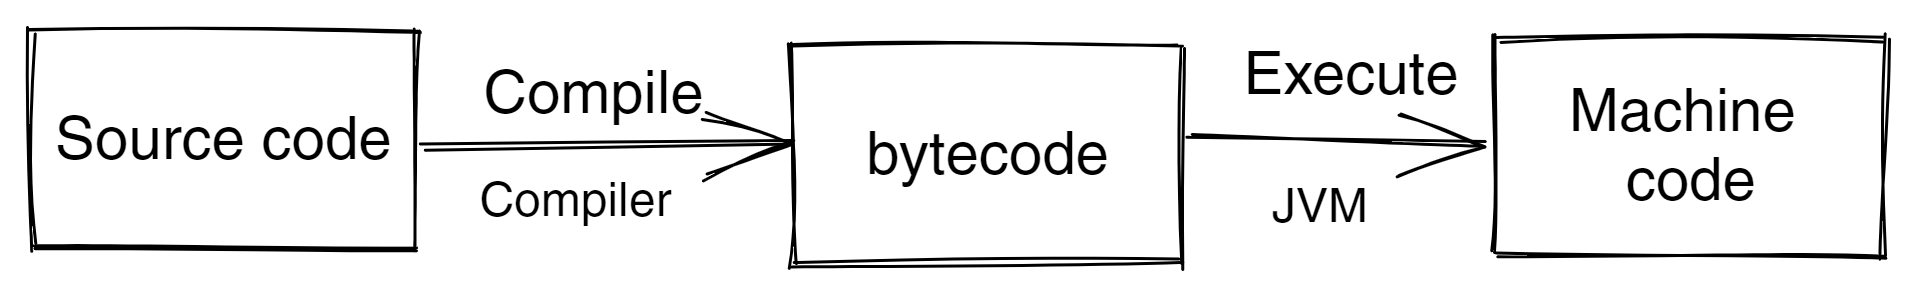 Java source code to bytecode